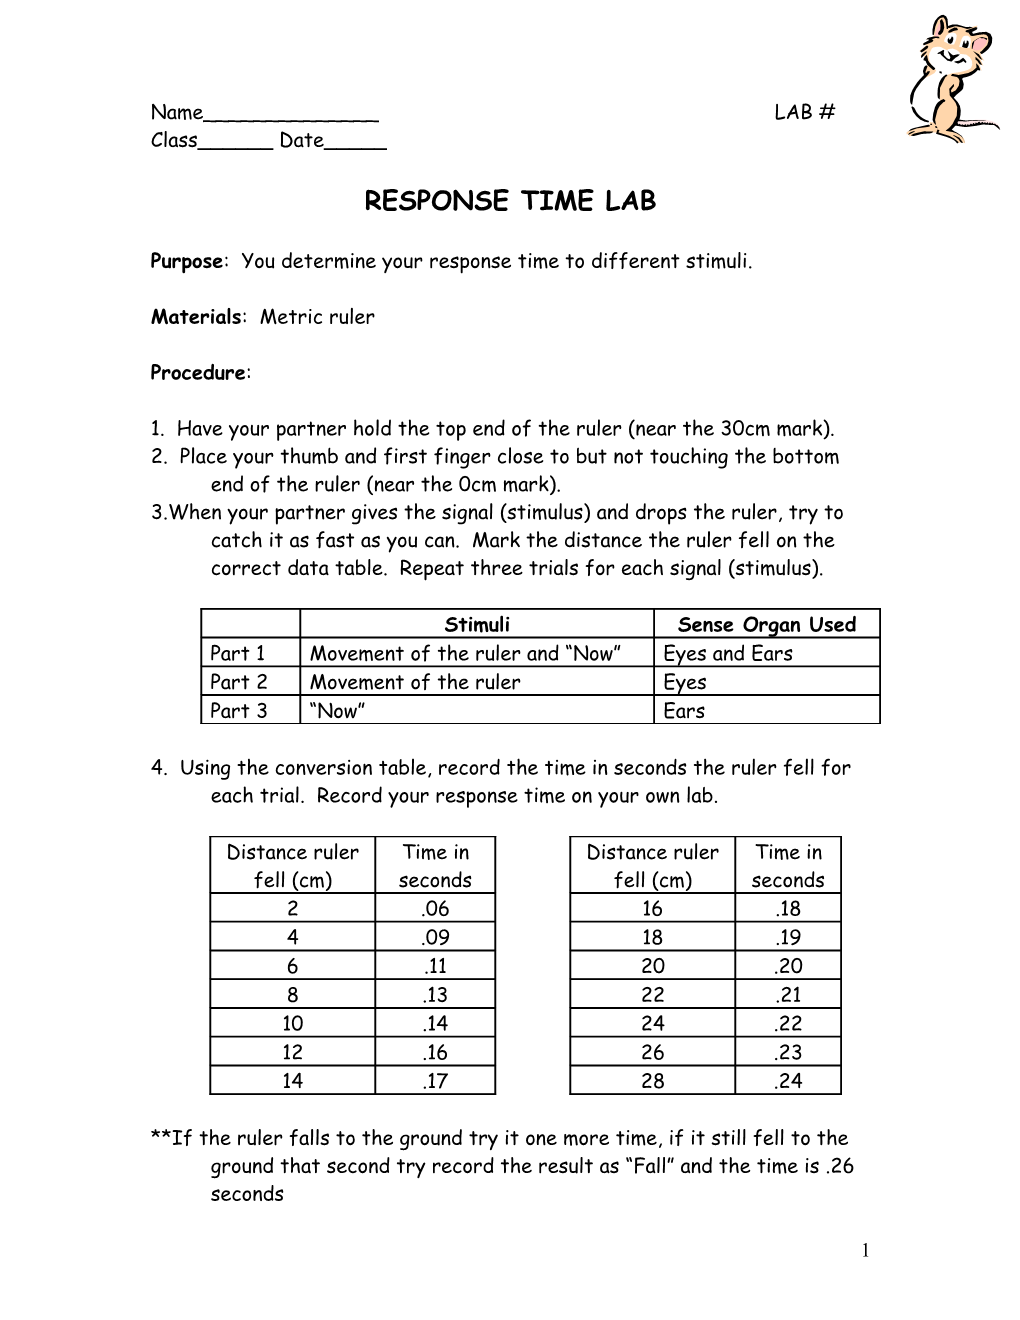 Lab: Response Time